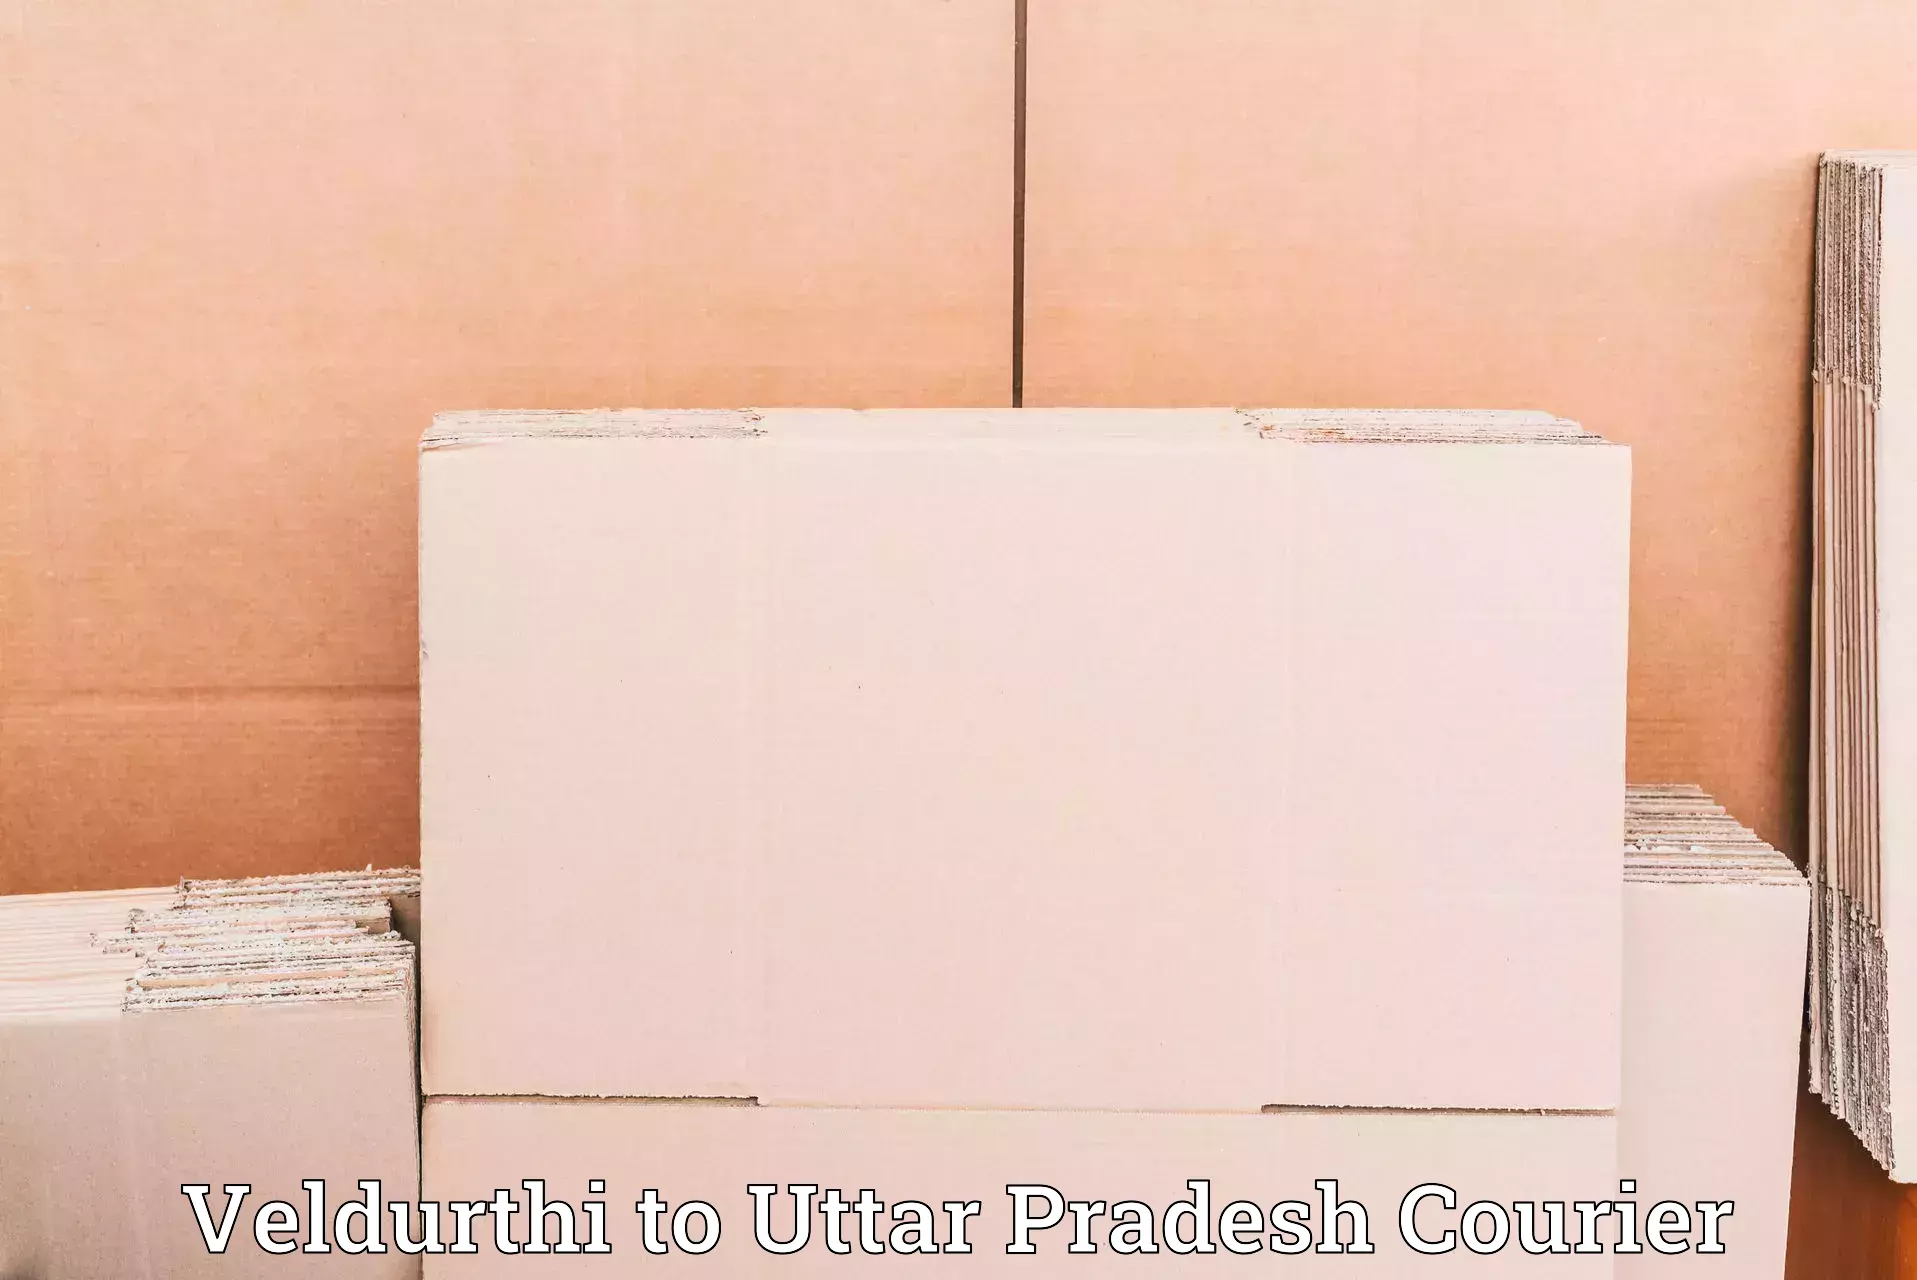 Customer-friendly courier services Veldurthi to Uttar Pradesh